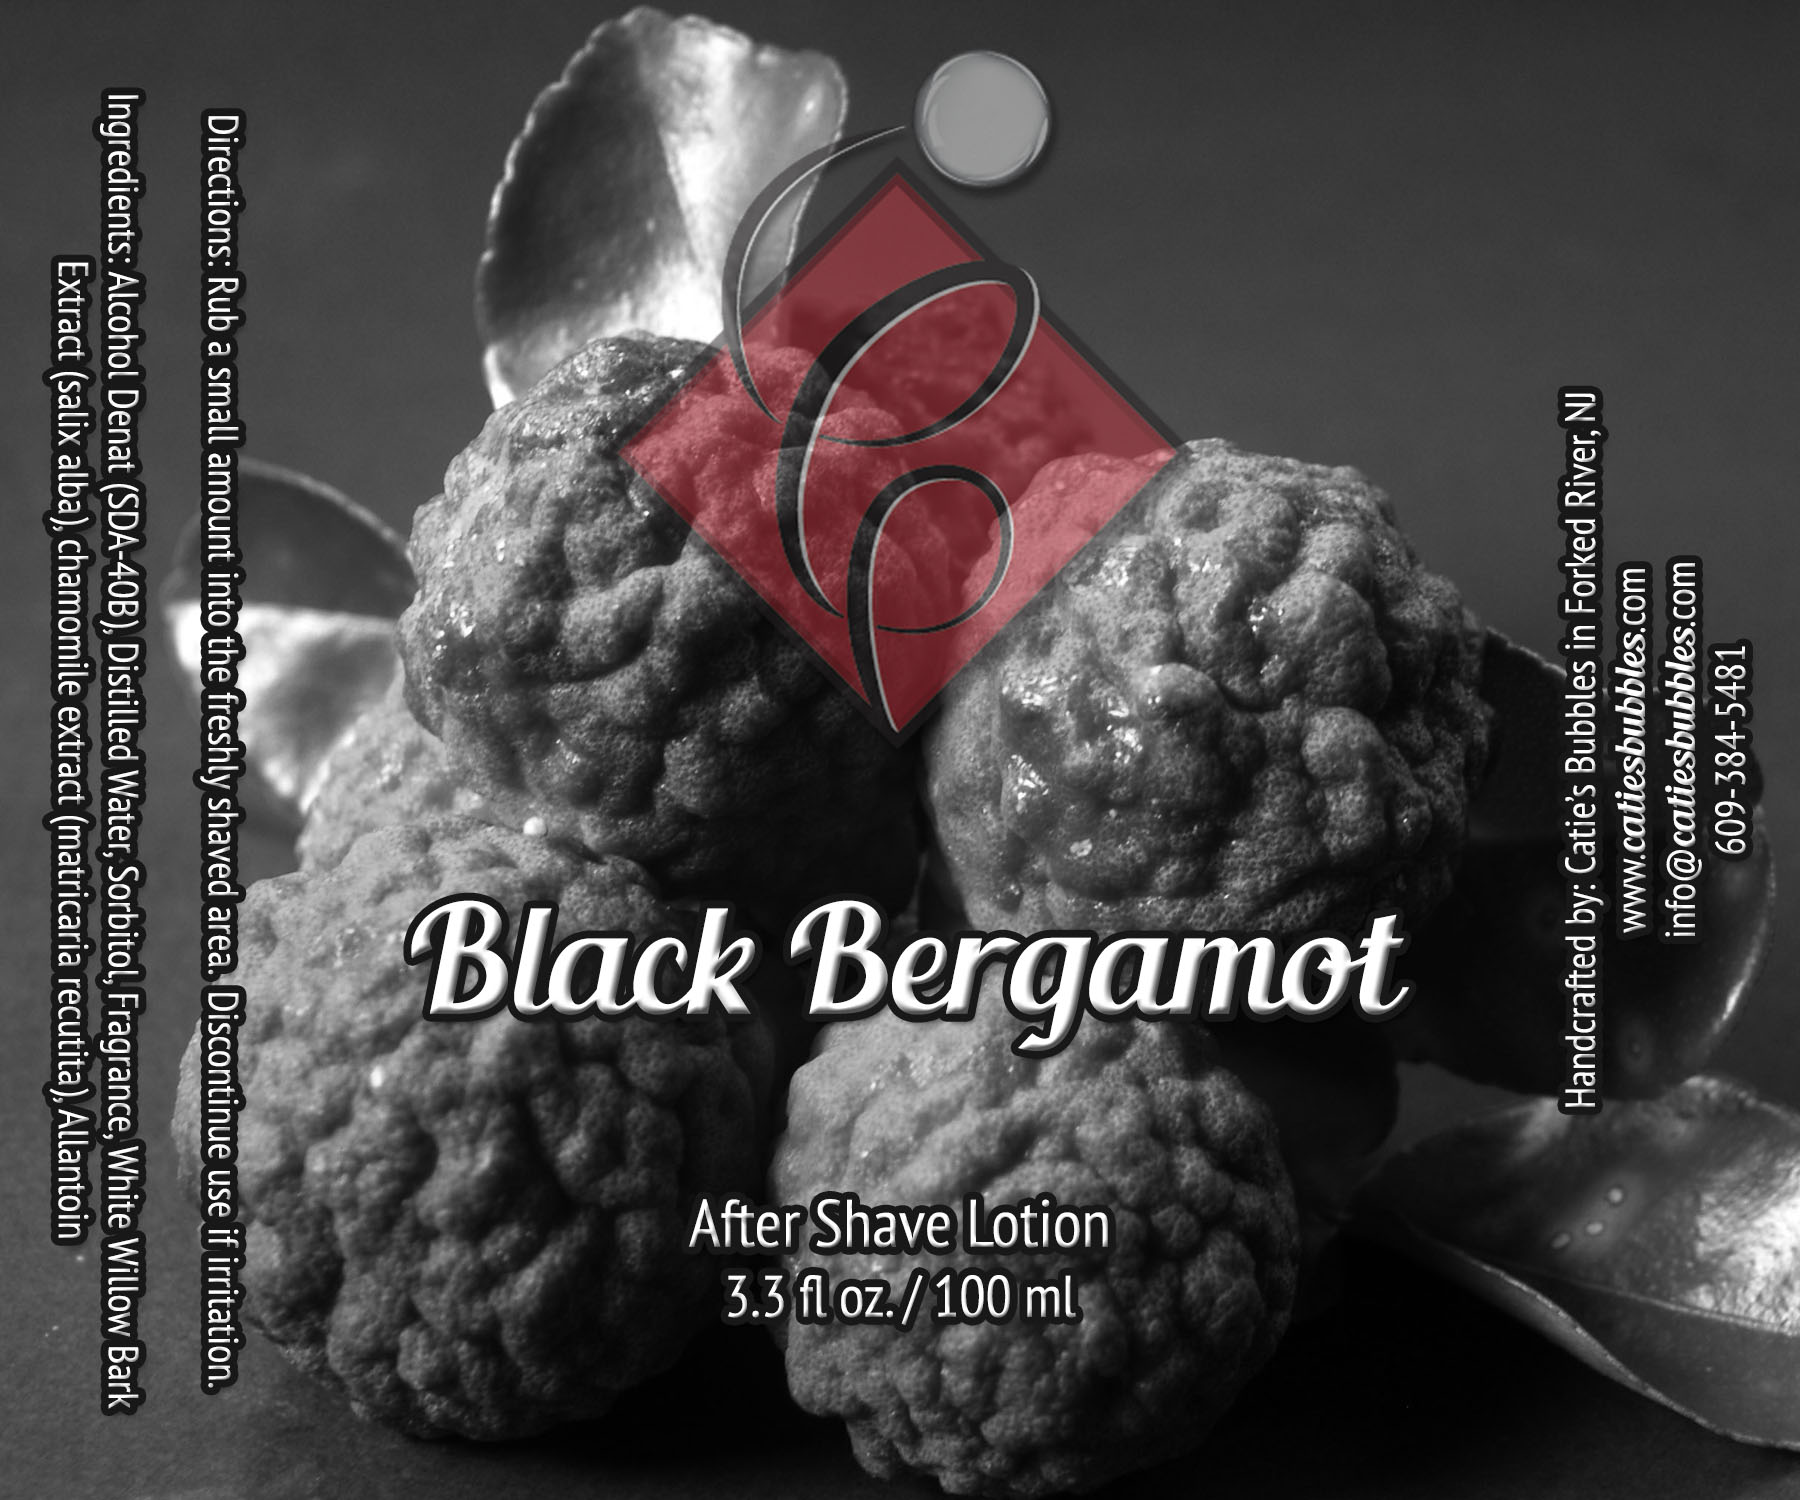 Black Bergamot After Shave Lotion